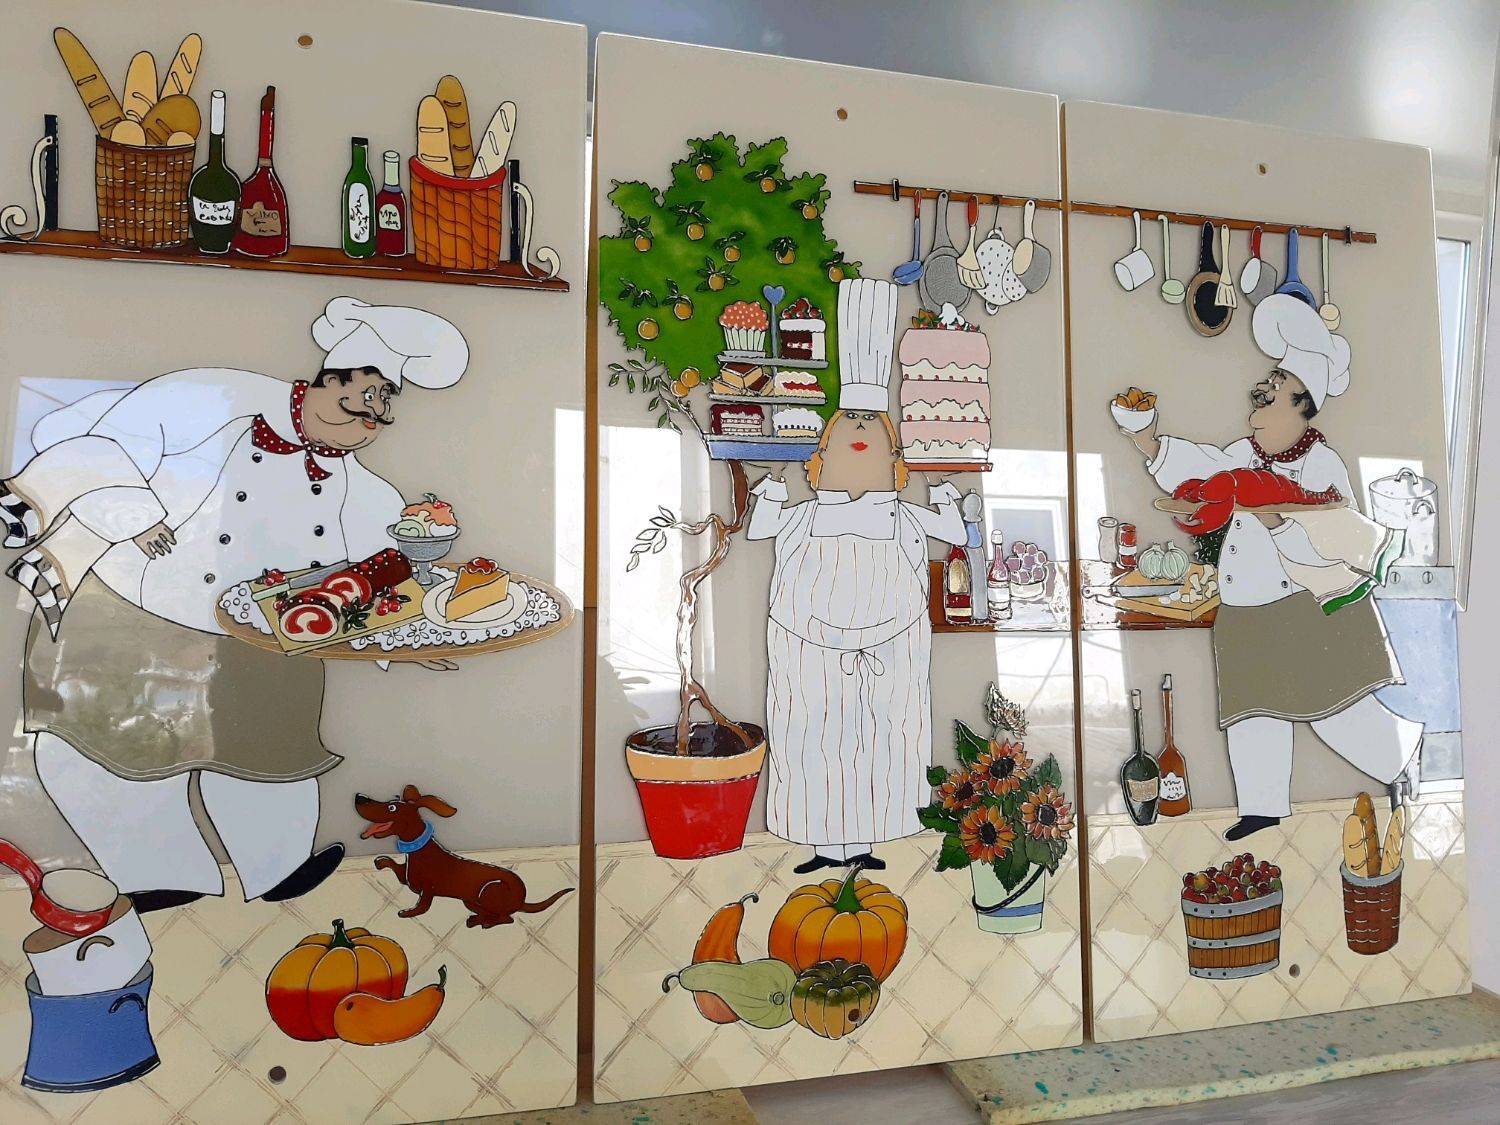 Панно из плитки на кухню: 80+ ярких фотоидей для декора фартука и кухонной отделки